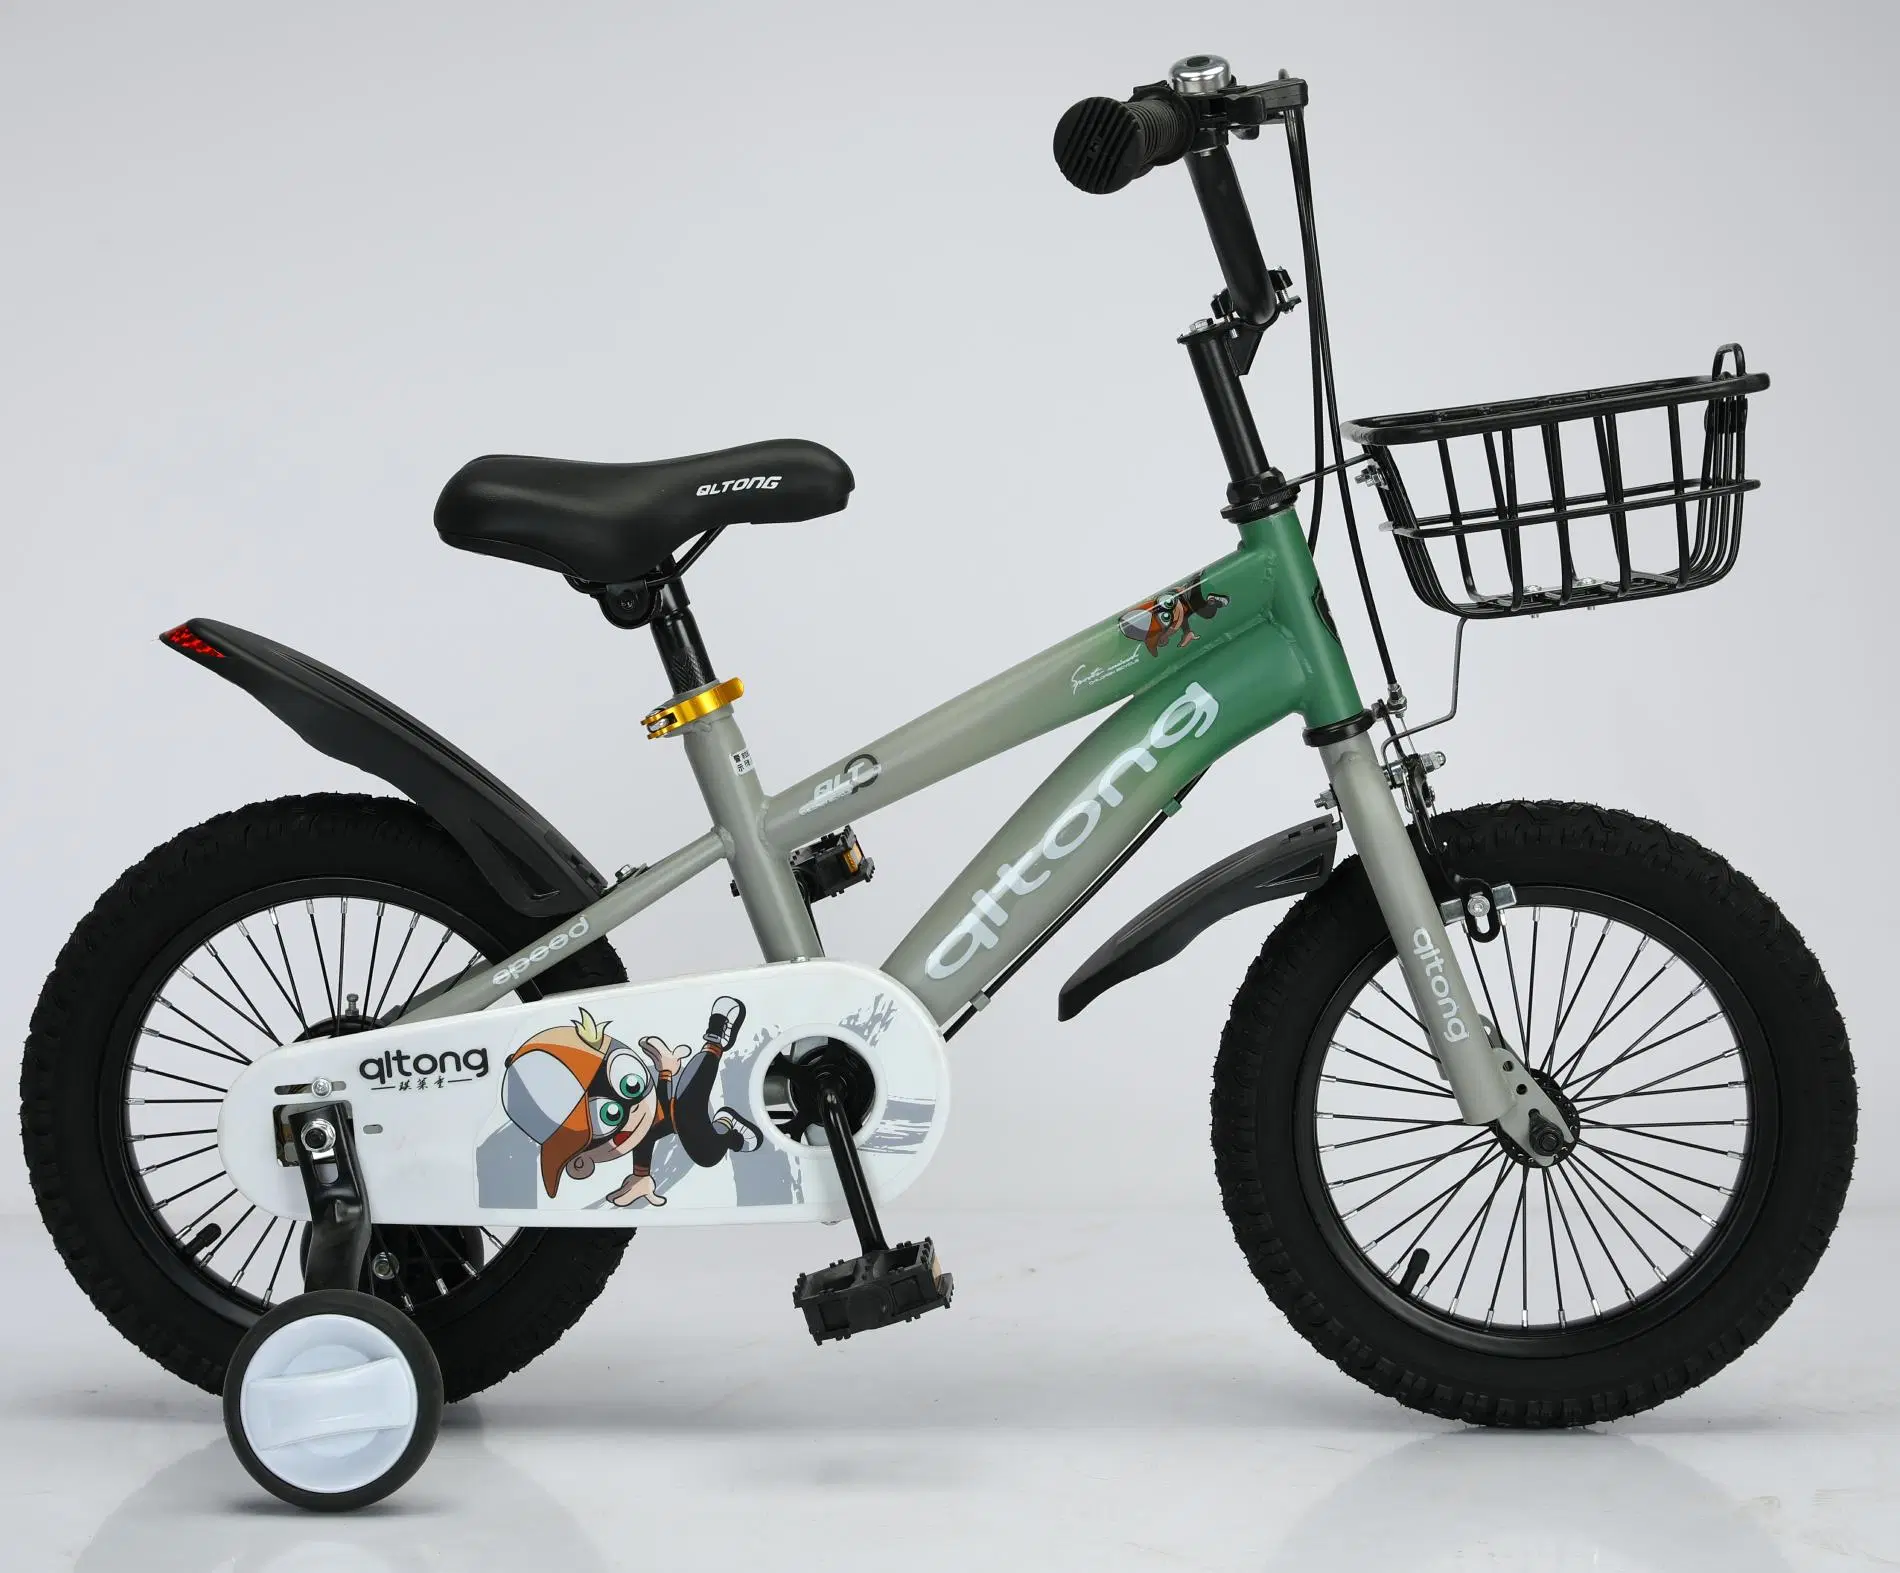 Servicio de OEM caliente de Venta de bicicletas para niños/ Niños bicicleta/ Niños juguetes para el 3-8 años de edad